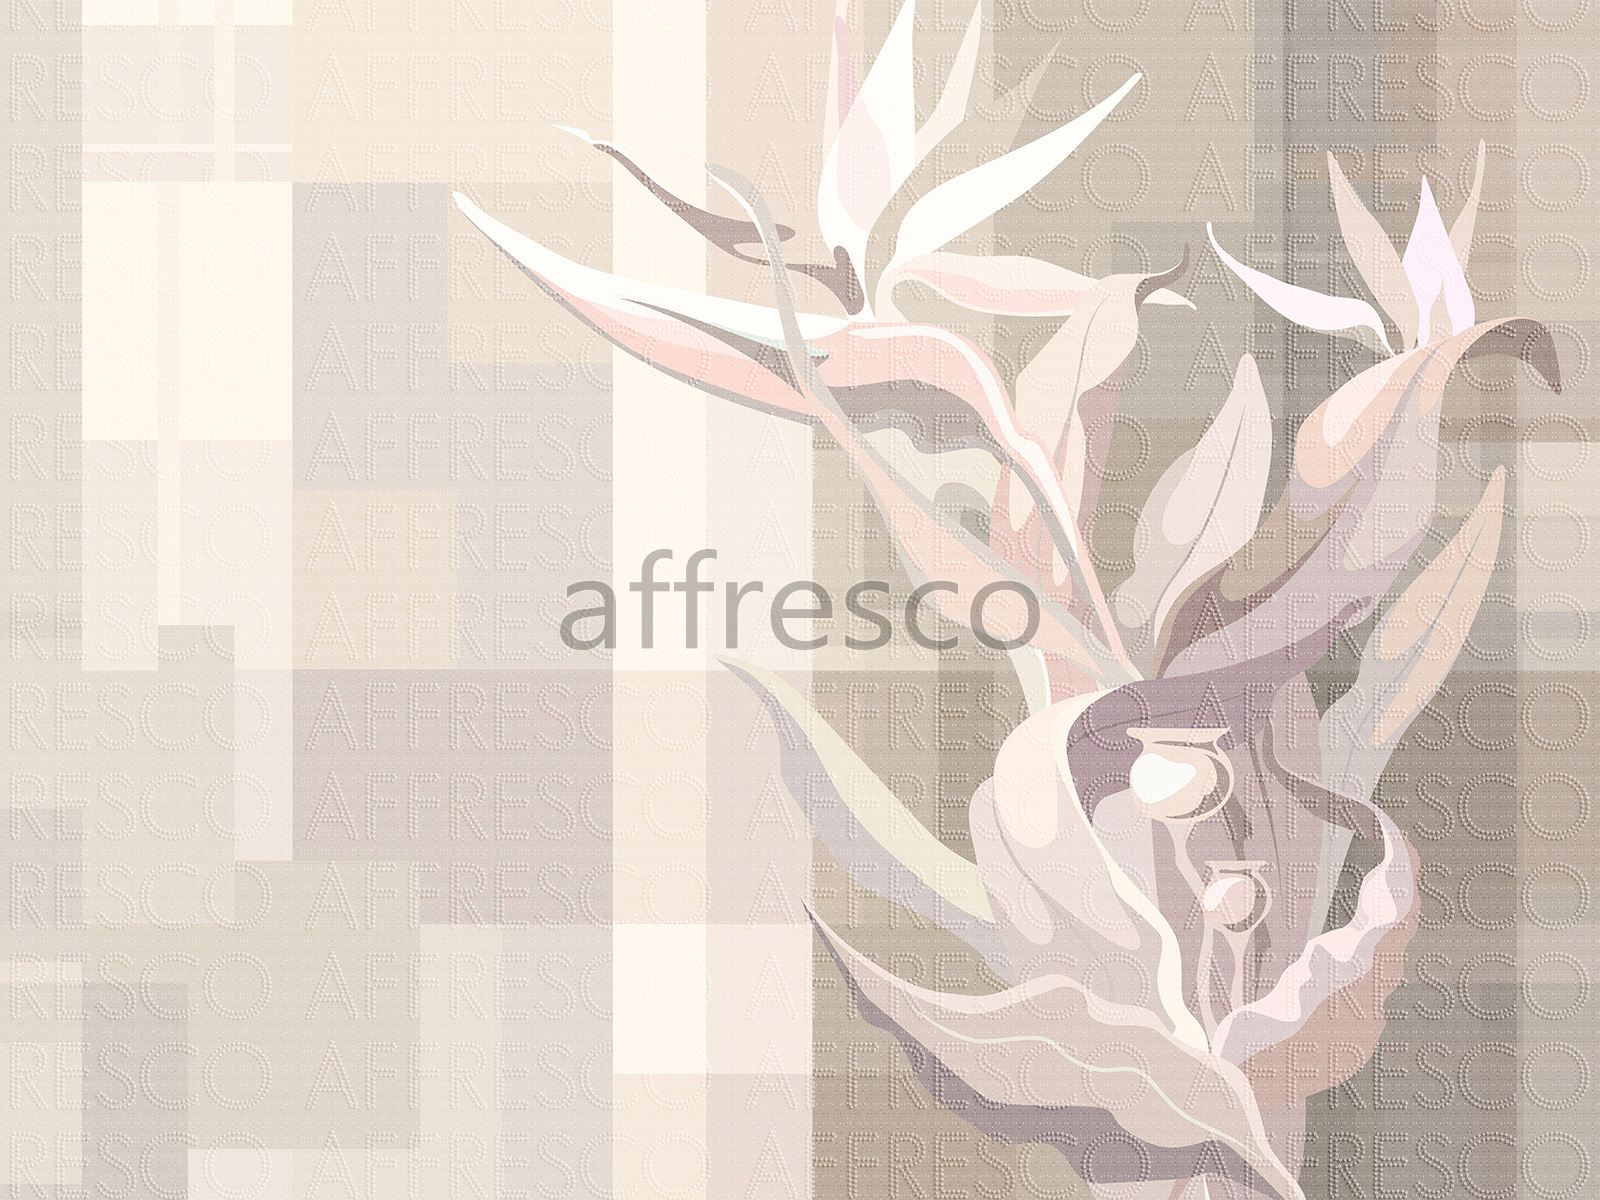 AF2200-COL4 | Fantasy | Affresco Factory